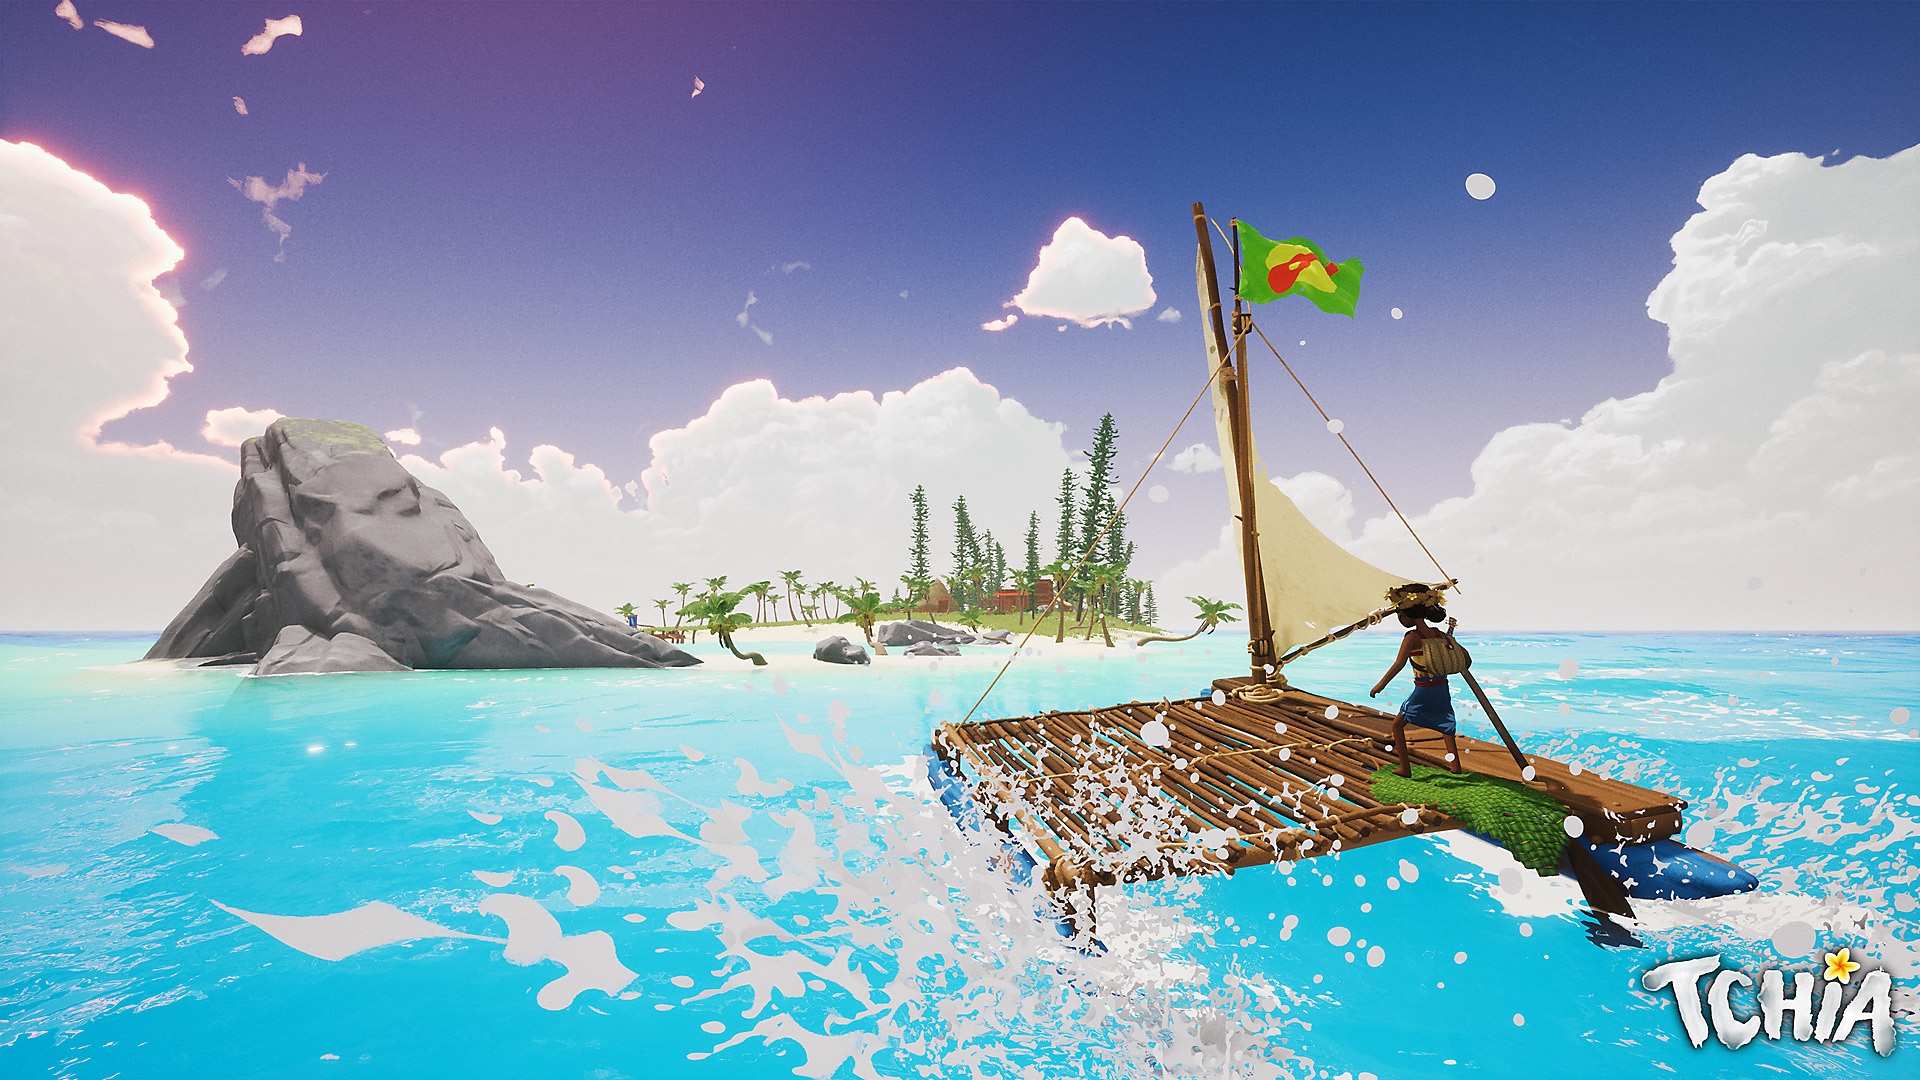 Tchia ekran görüntüsü, ana karakterin bir adaya doğru bir sal üzerinde gittiğini gösteriyor